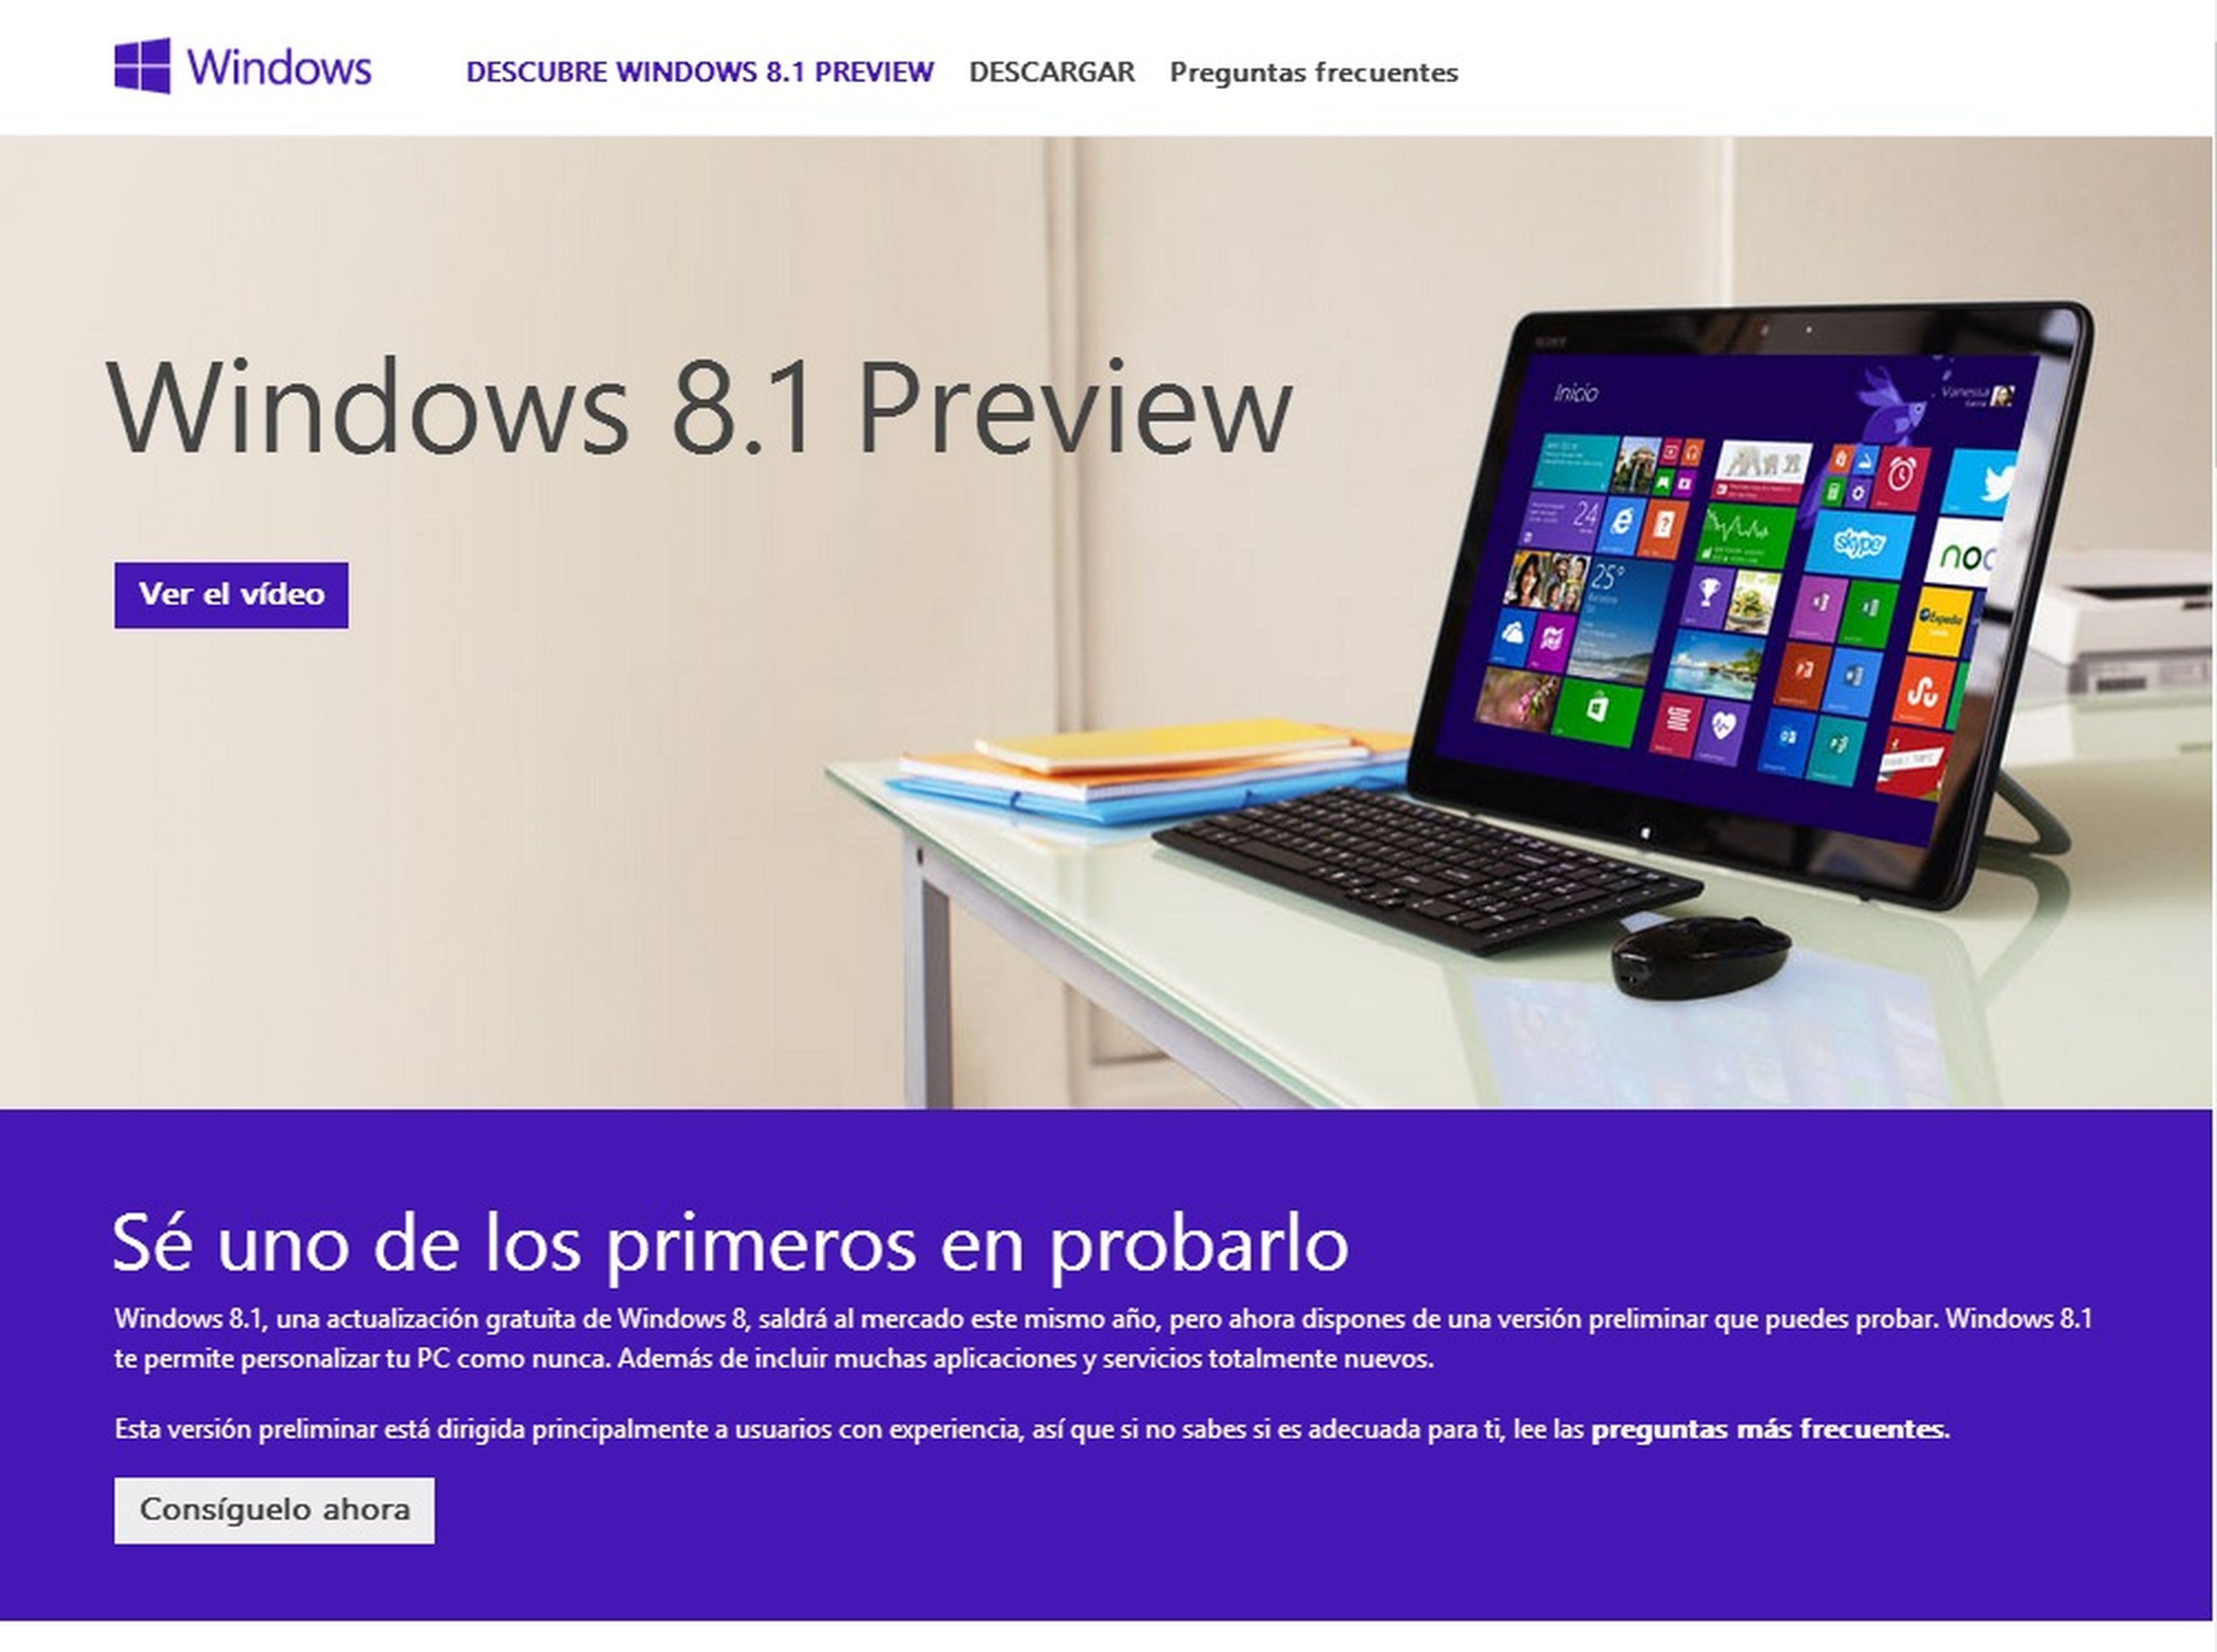 Windows 8 Preview ya disponible para descargar